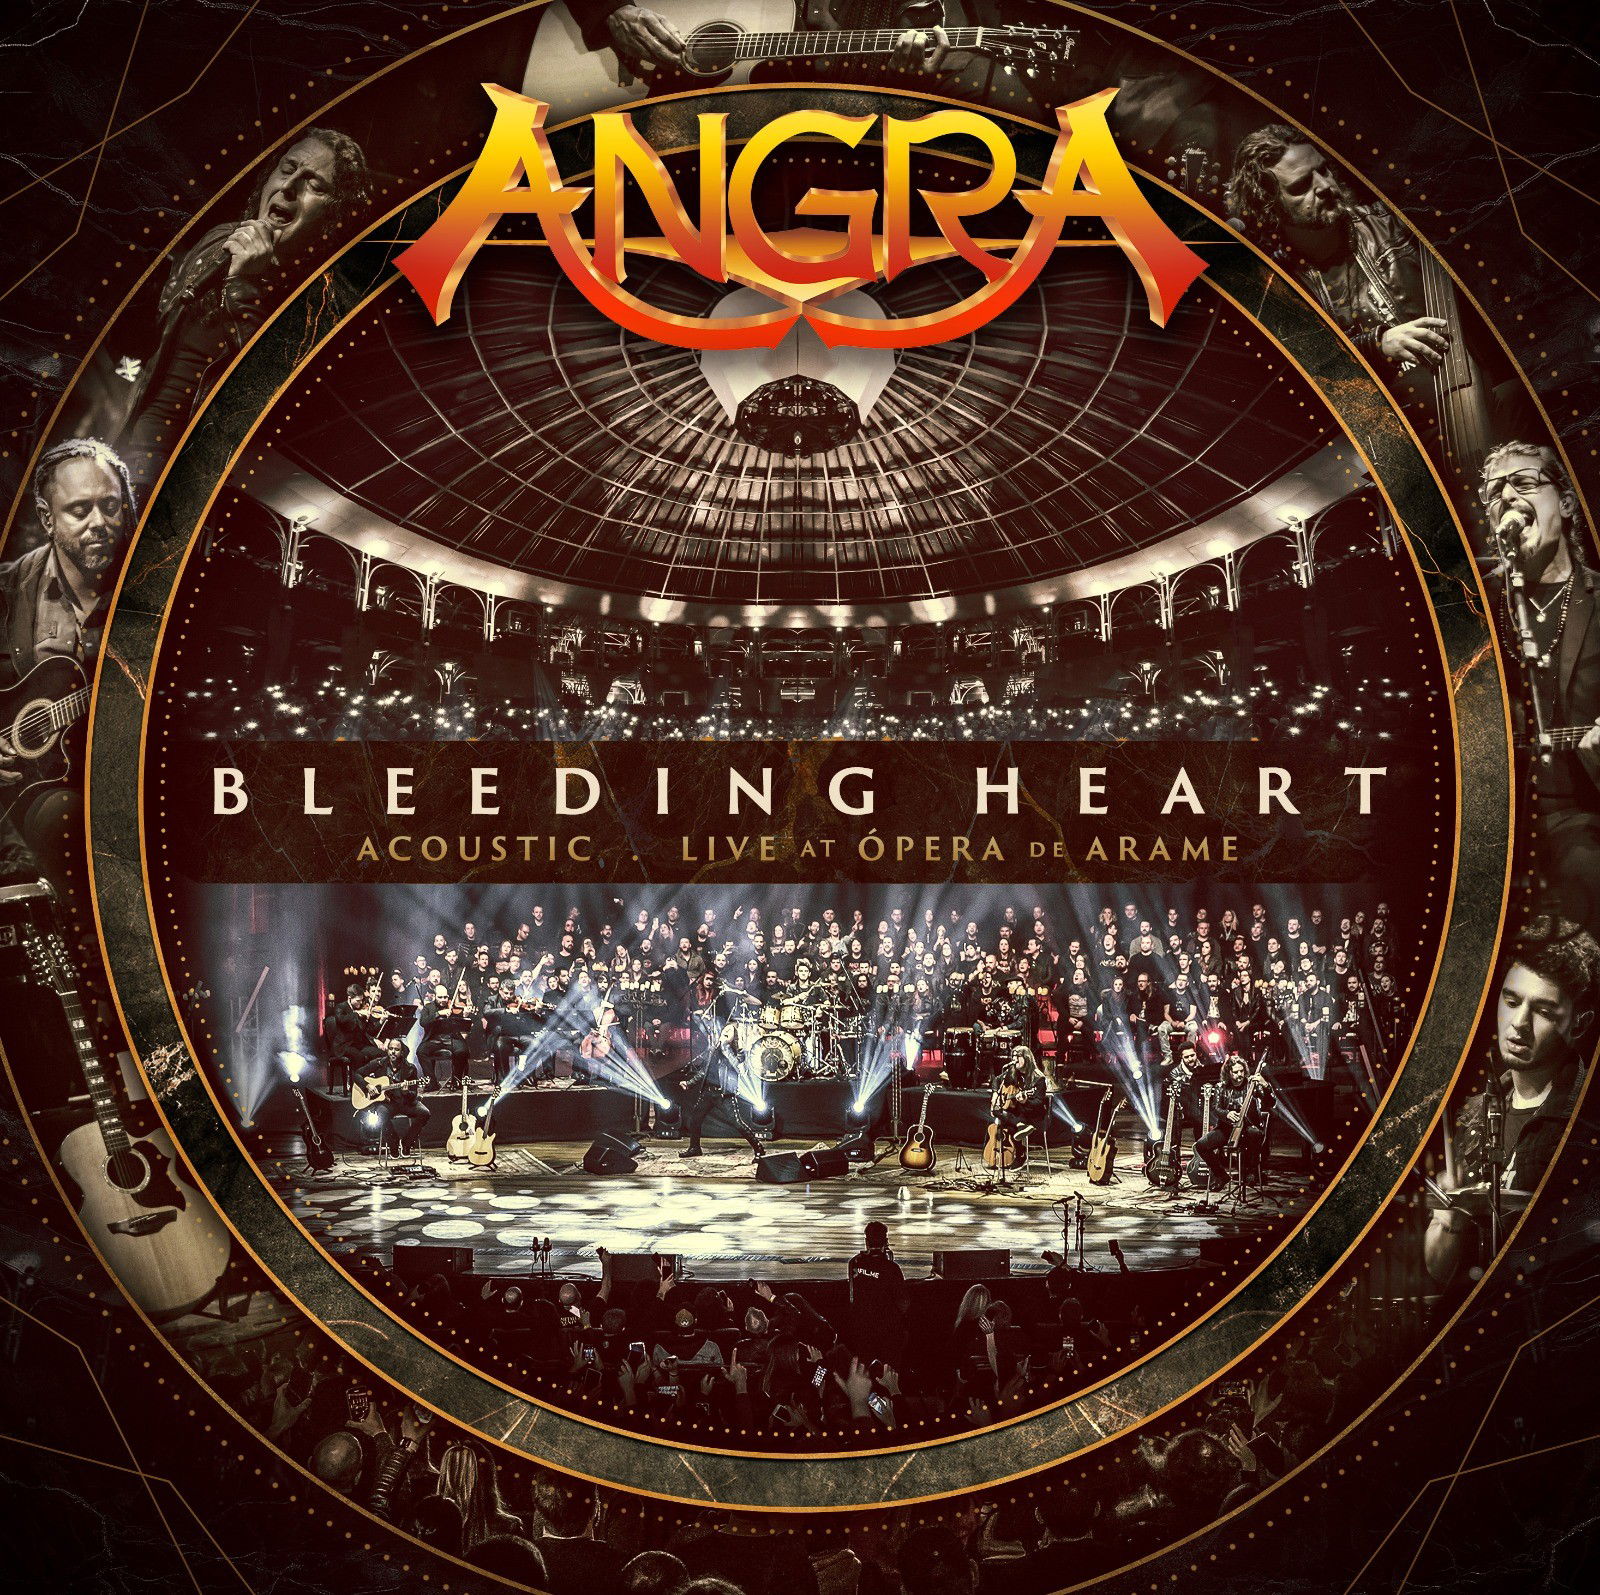 Angra anuncia single e videoclipe de “Bleeding Heart” em versão acústica